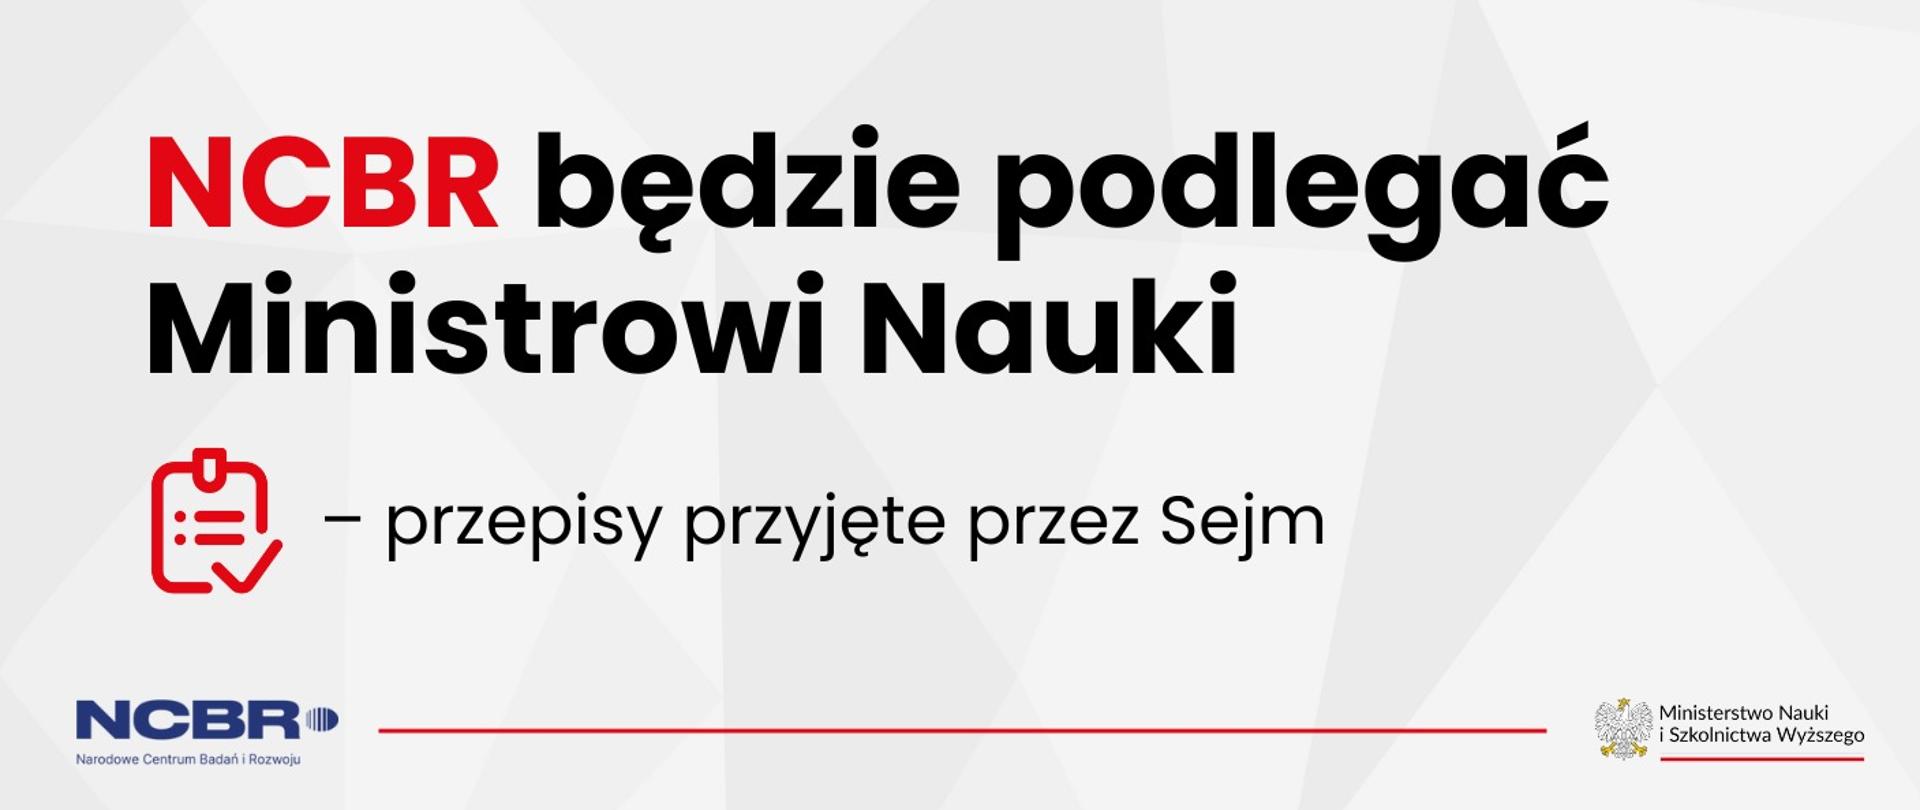 NCBR będzie podlegać Ministrowi Nauki – przepisy przyjęte przez Sejm